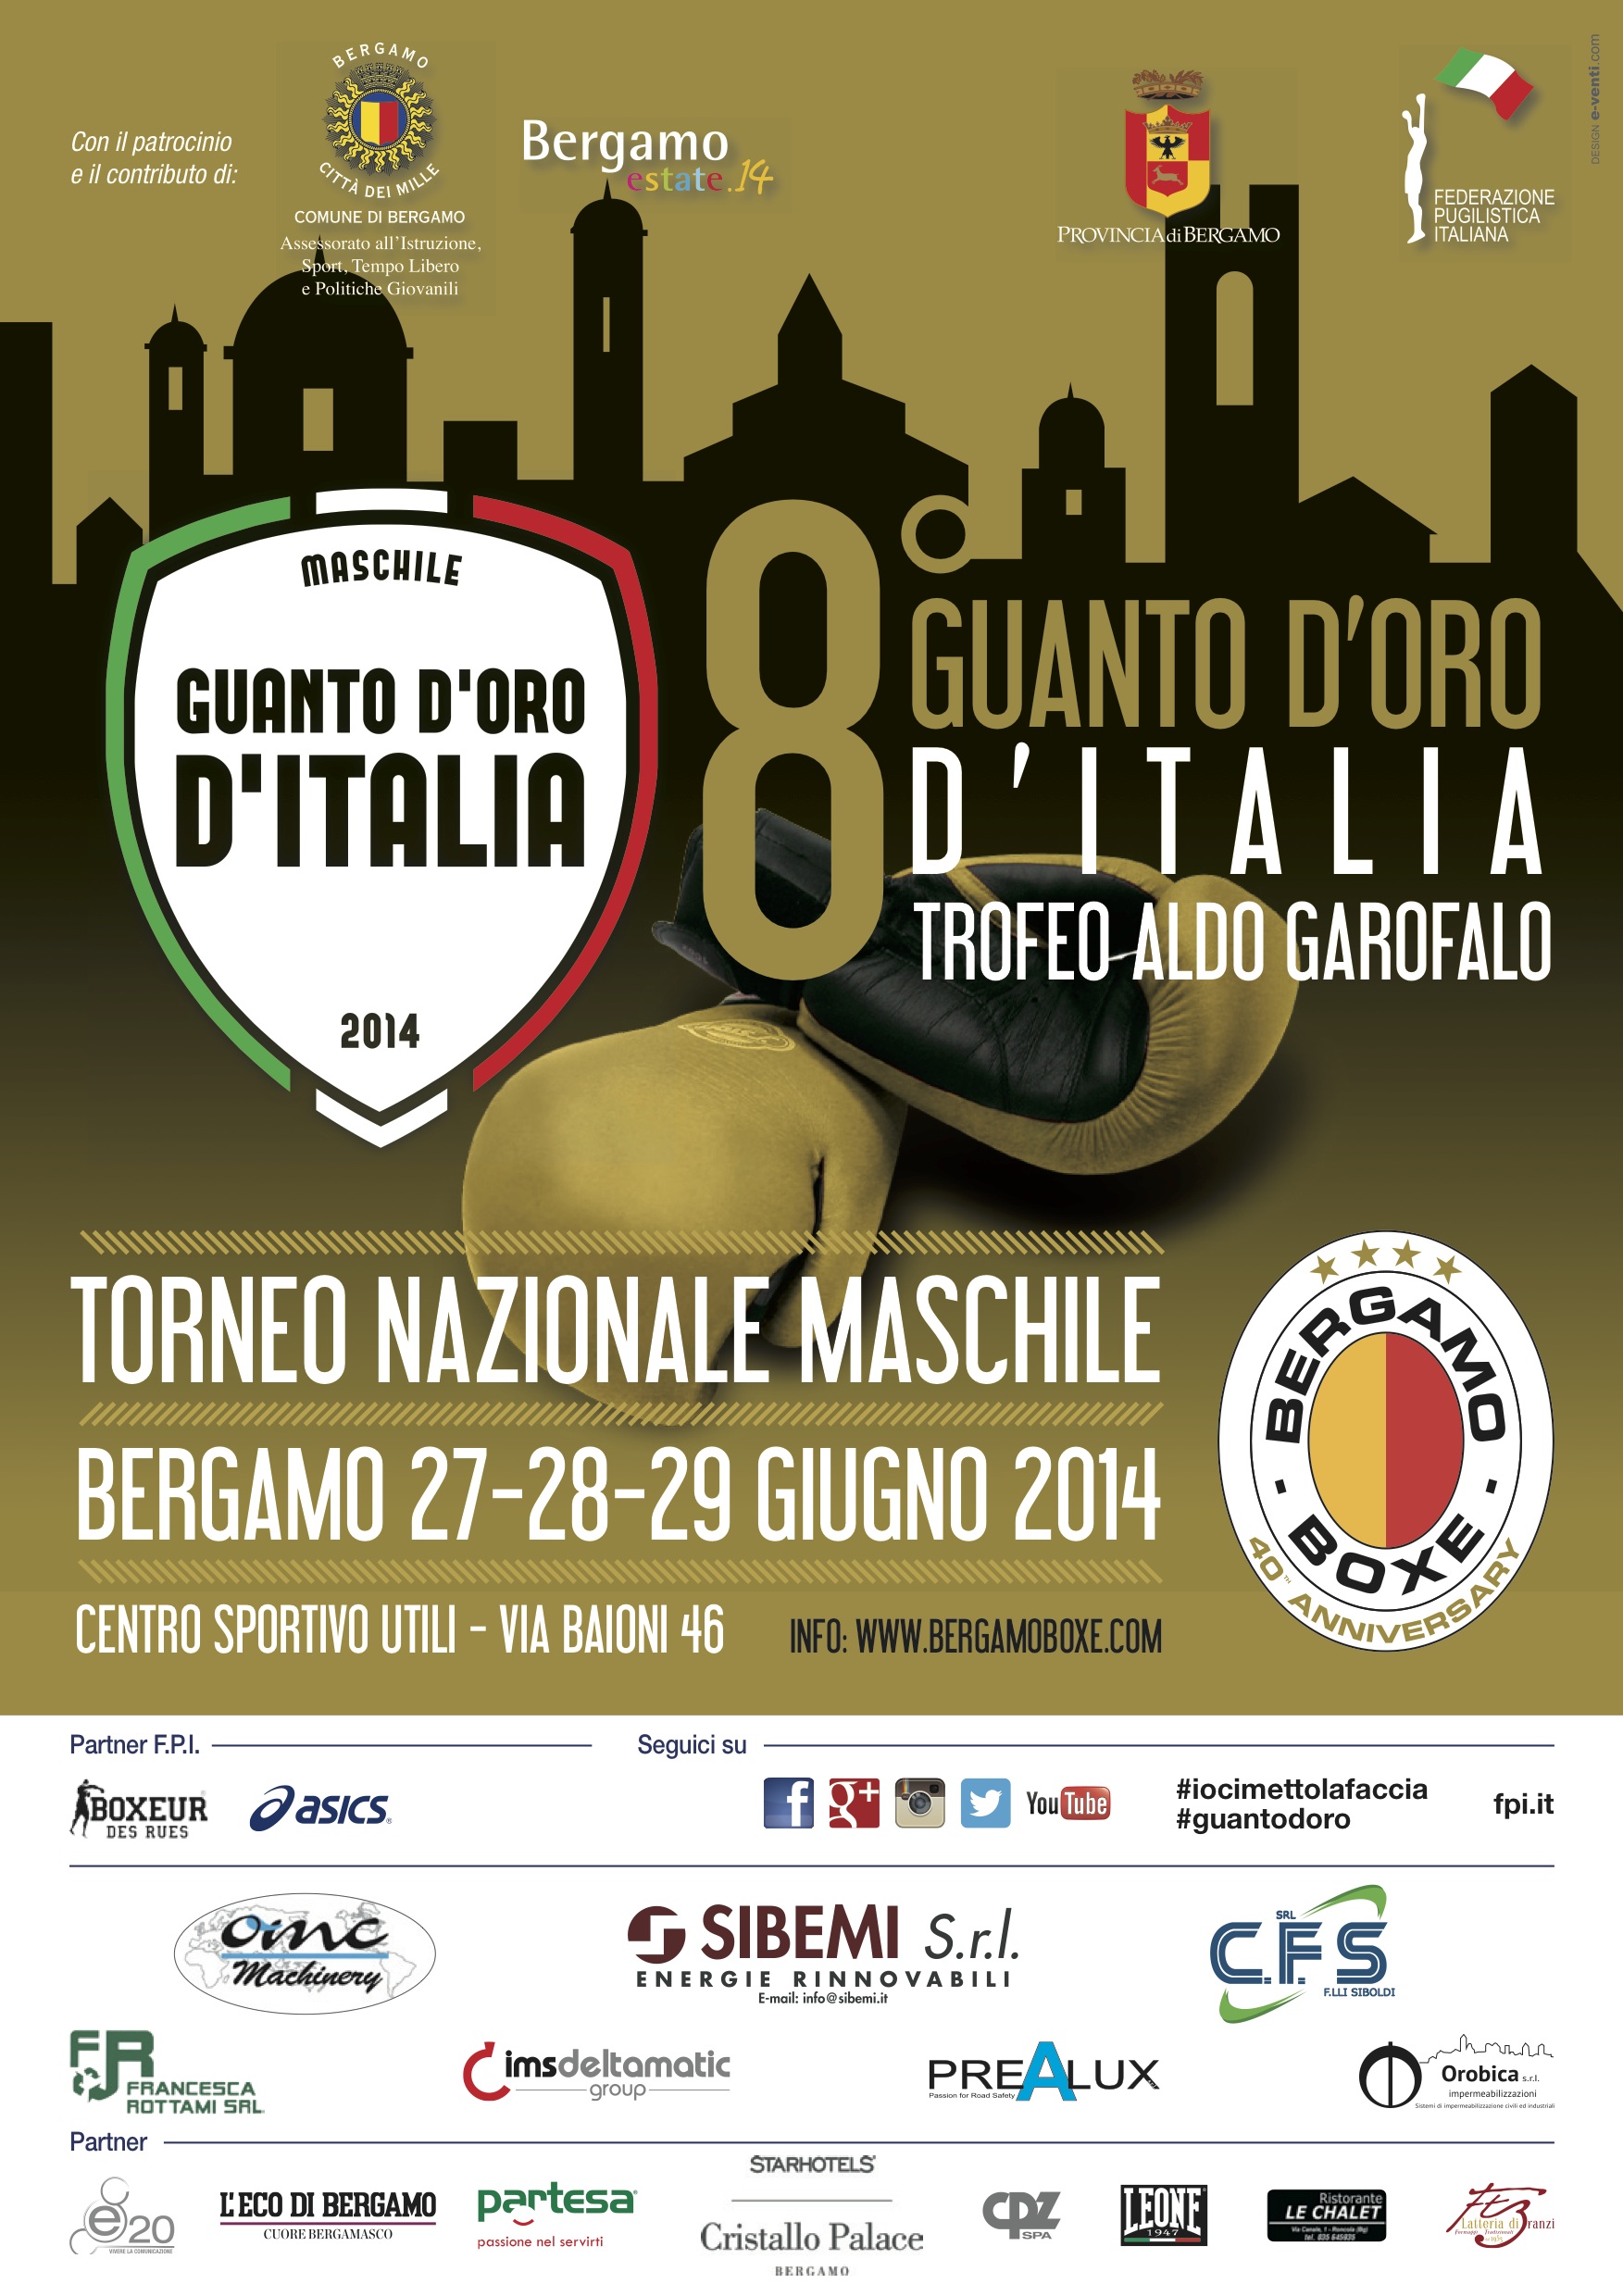 Guanto d'Oro D'Italia A. Garofalo Bergamo 2014: Presentazione Pugili Cat. +91 Kg e Numeri/Curiosità 